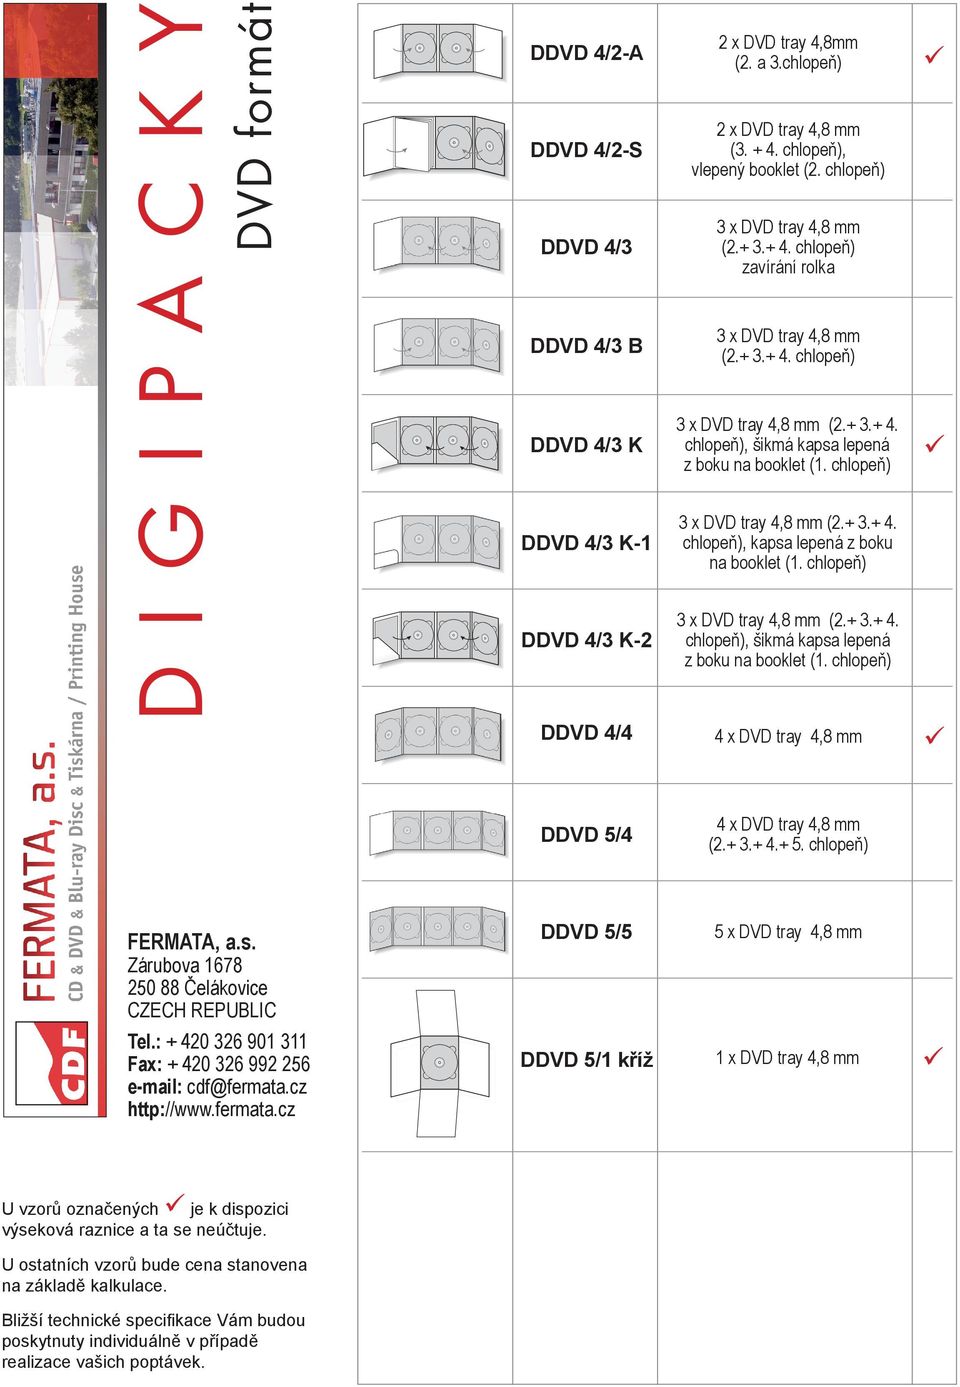 chlopeň) zavírání rolka DDVD 4/3 B 3 x DVD tray 4,8 mm (2.